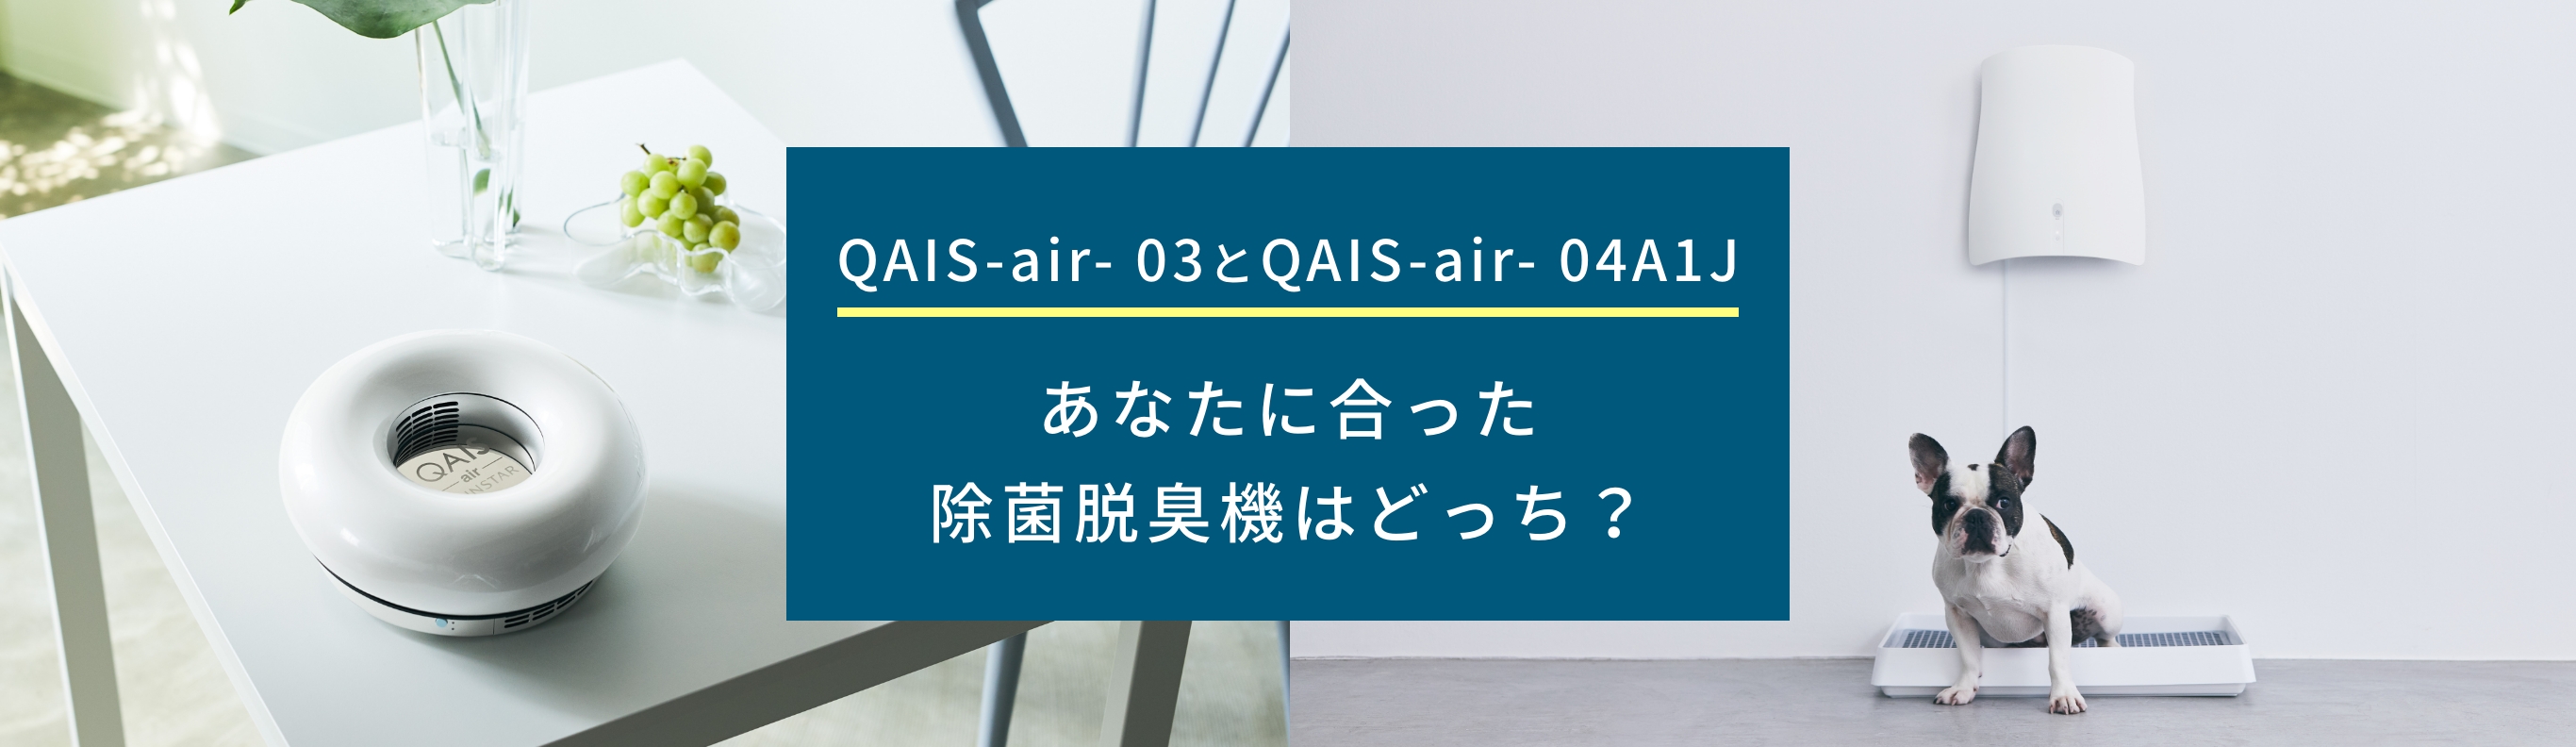 QAIS-air- 03とQAIS-air- 04A1J